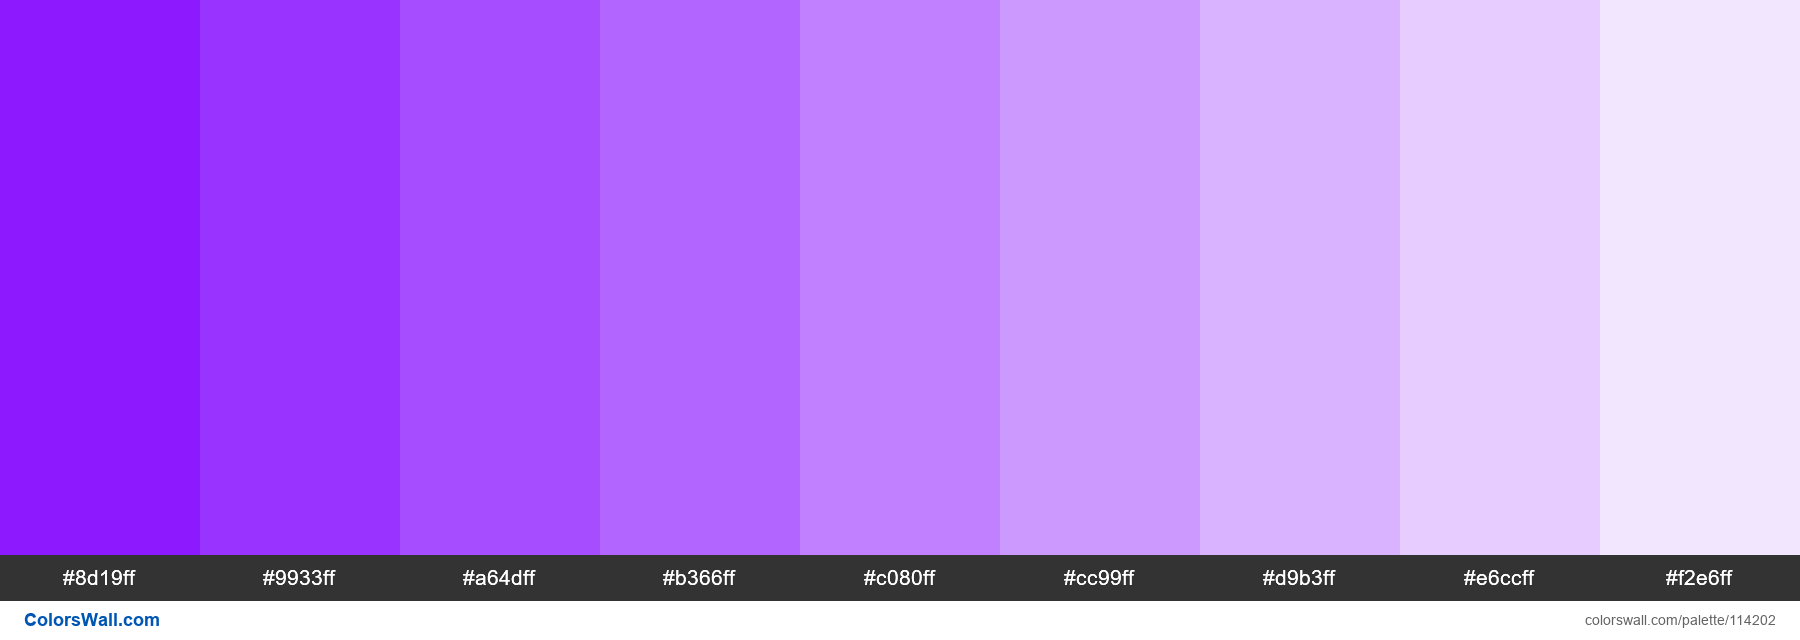 detektor færge følsomhed purple-light colors palette | ColorsWall